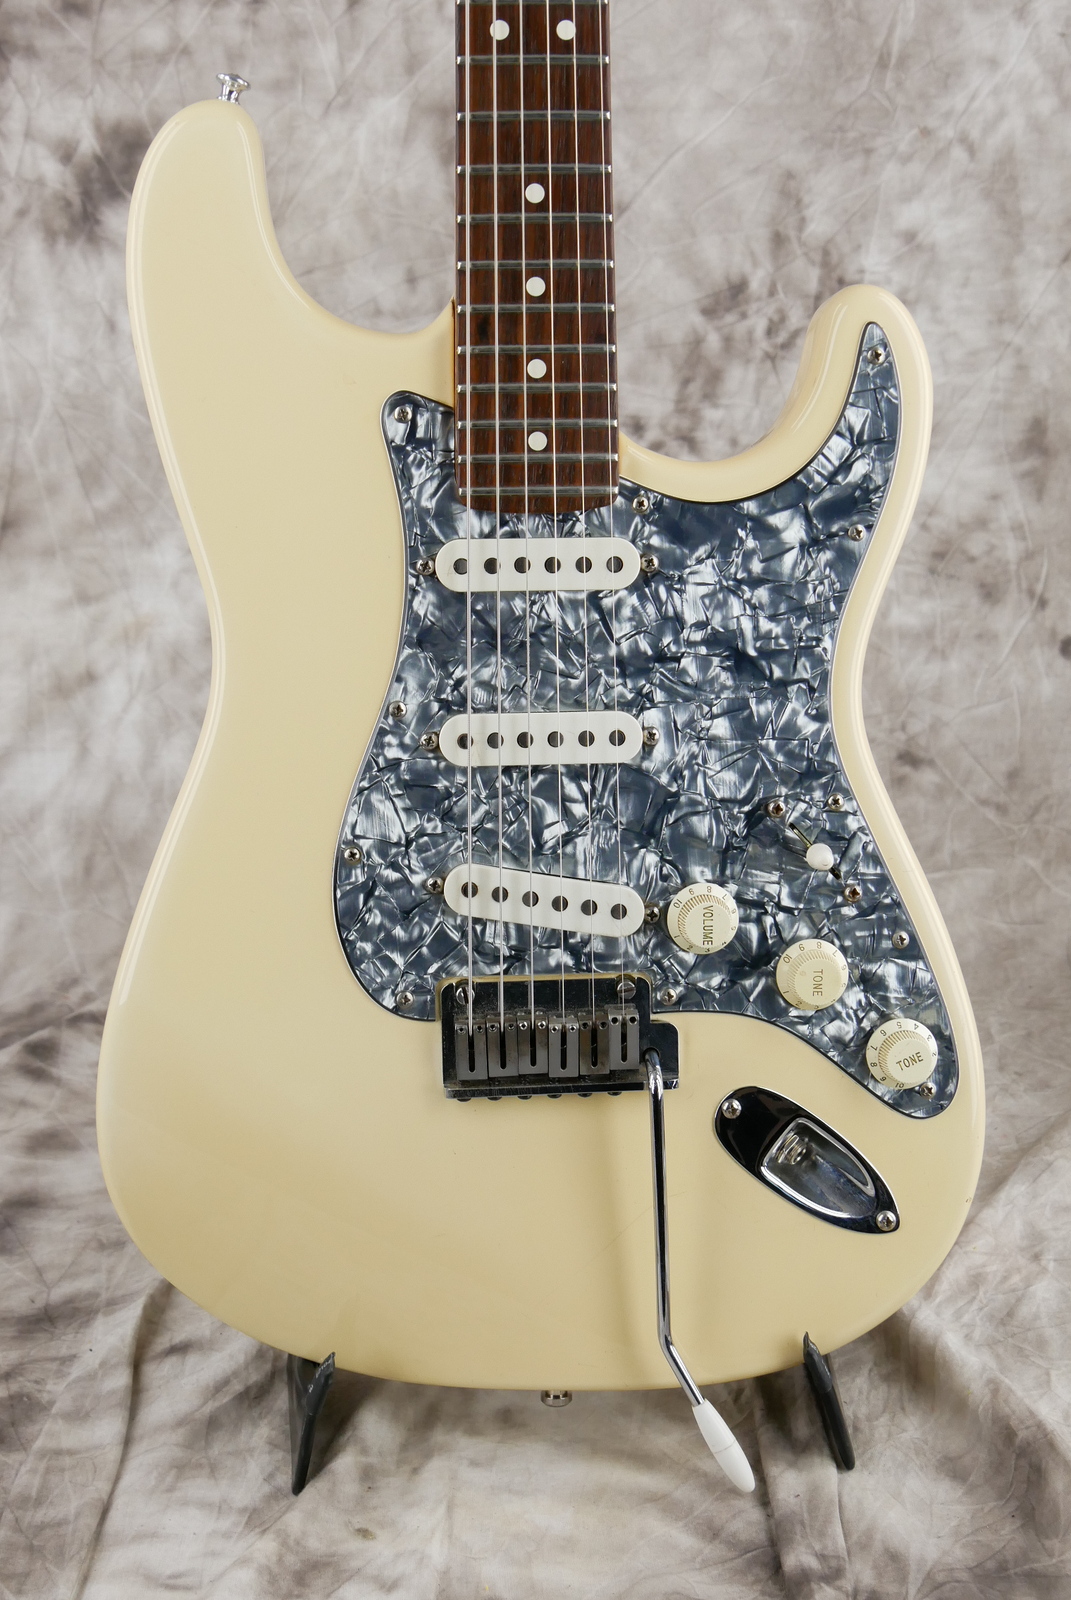 Fender_Stratocaster_AM_Standard_olympic_white_1995-003.JPG